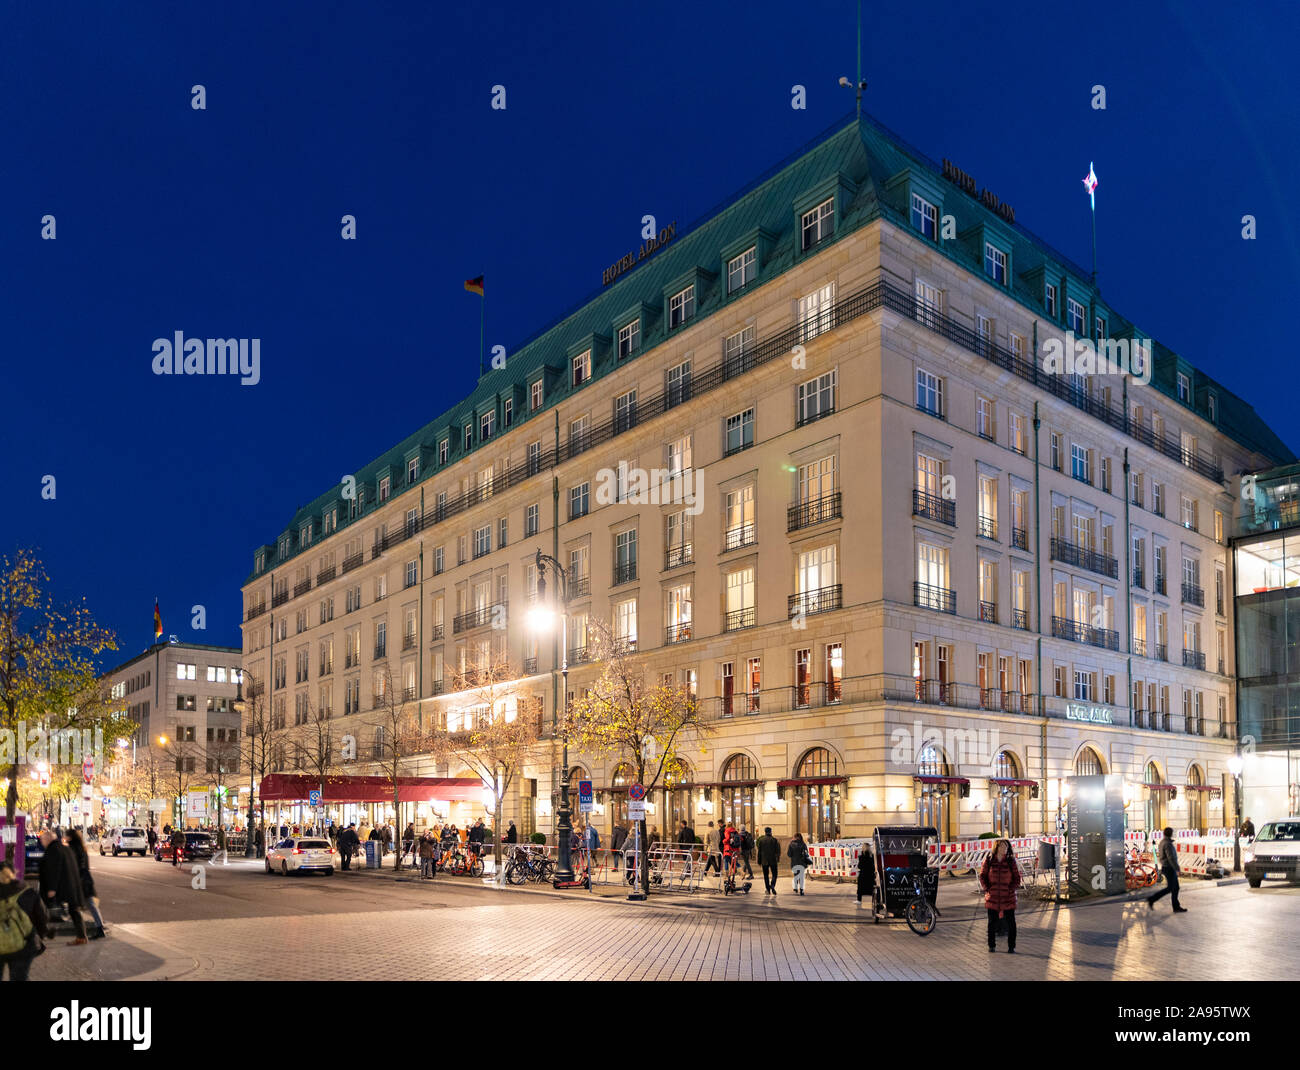 Vue de nuit à l'hôtel Adlon Pariser Platz à Berlin, Allemagne Banque D'Images